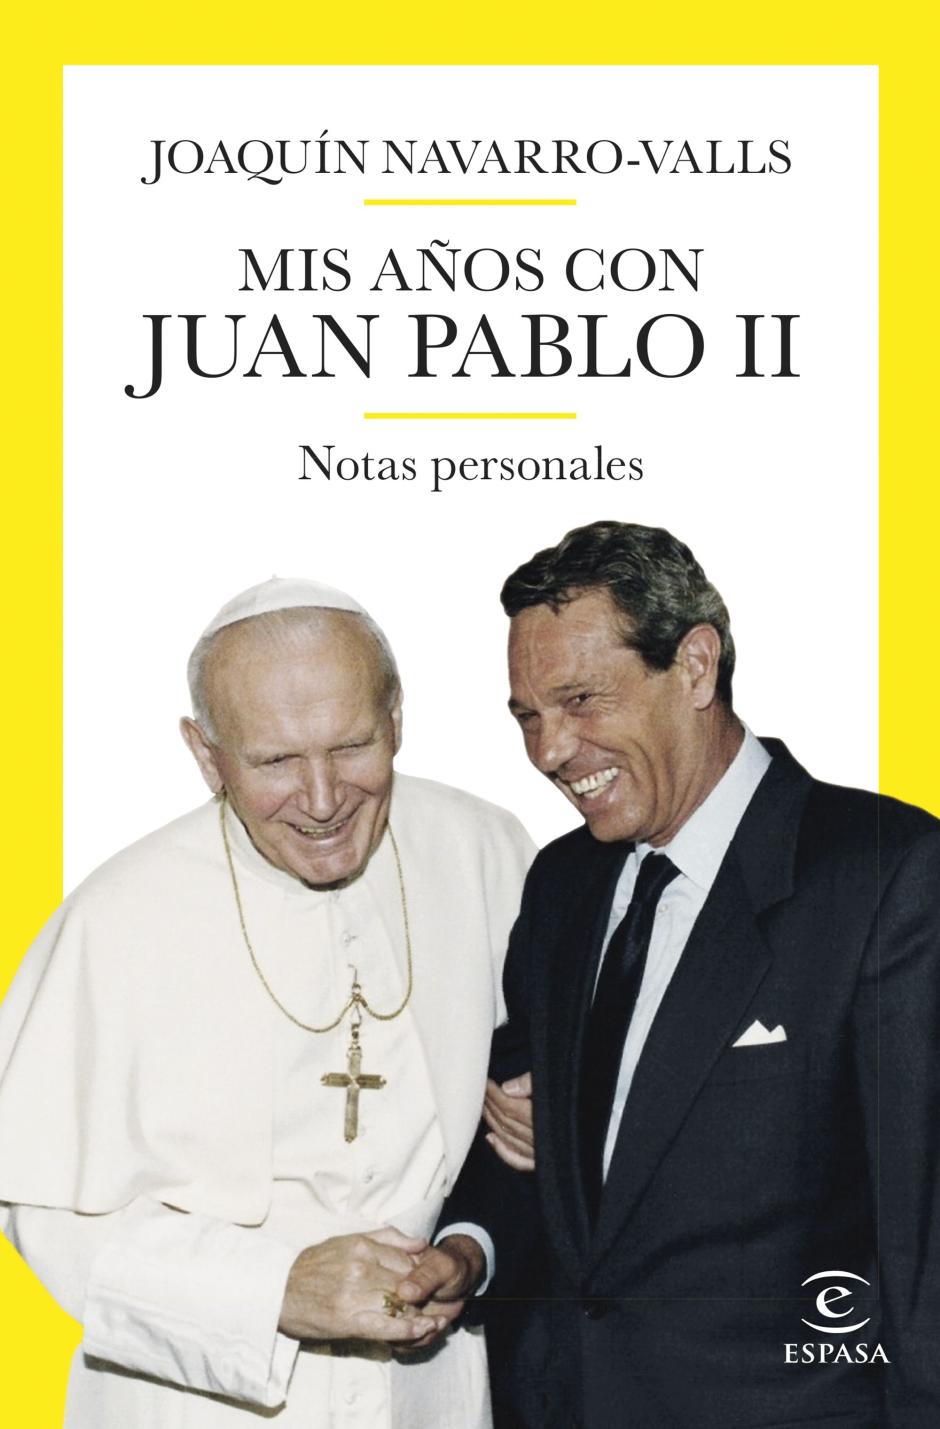 Joaquín Navarro-Vals acaba de publicar 'Mis años con Juan Pablo II' (Espasa)